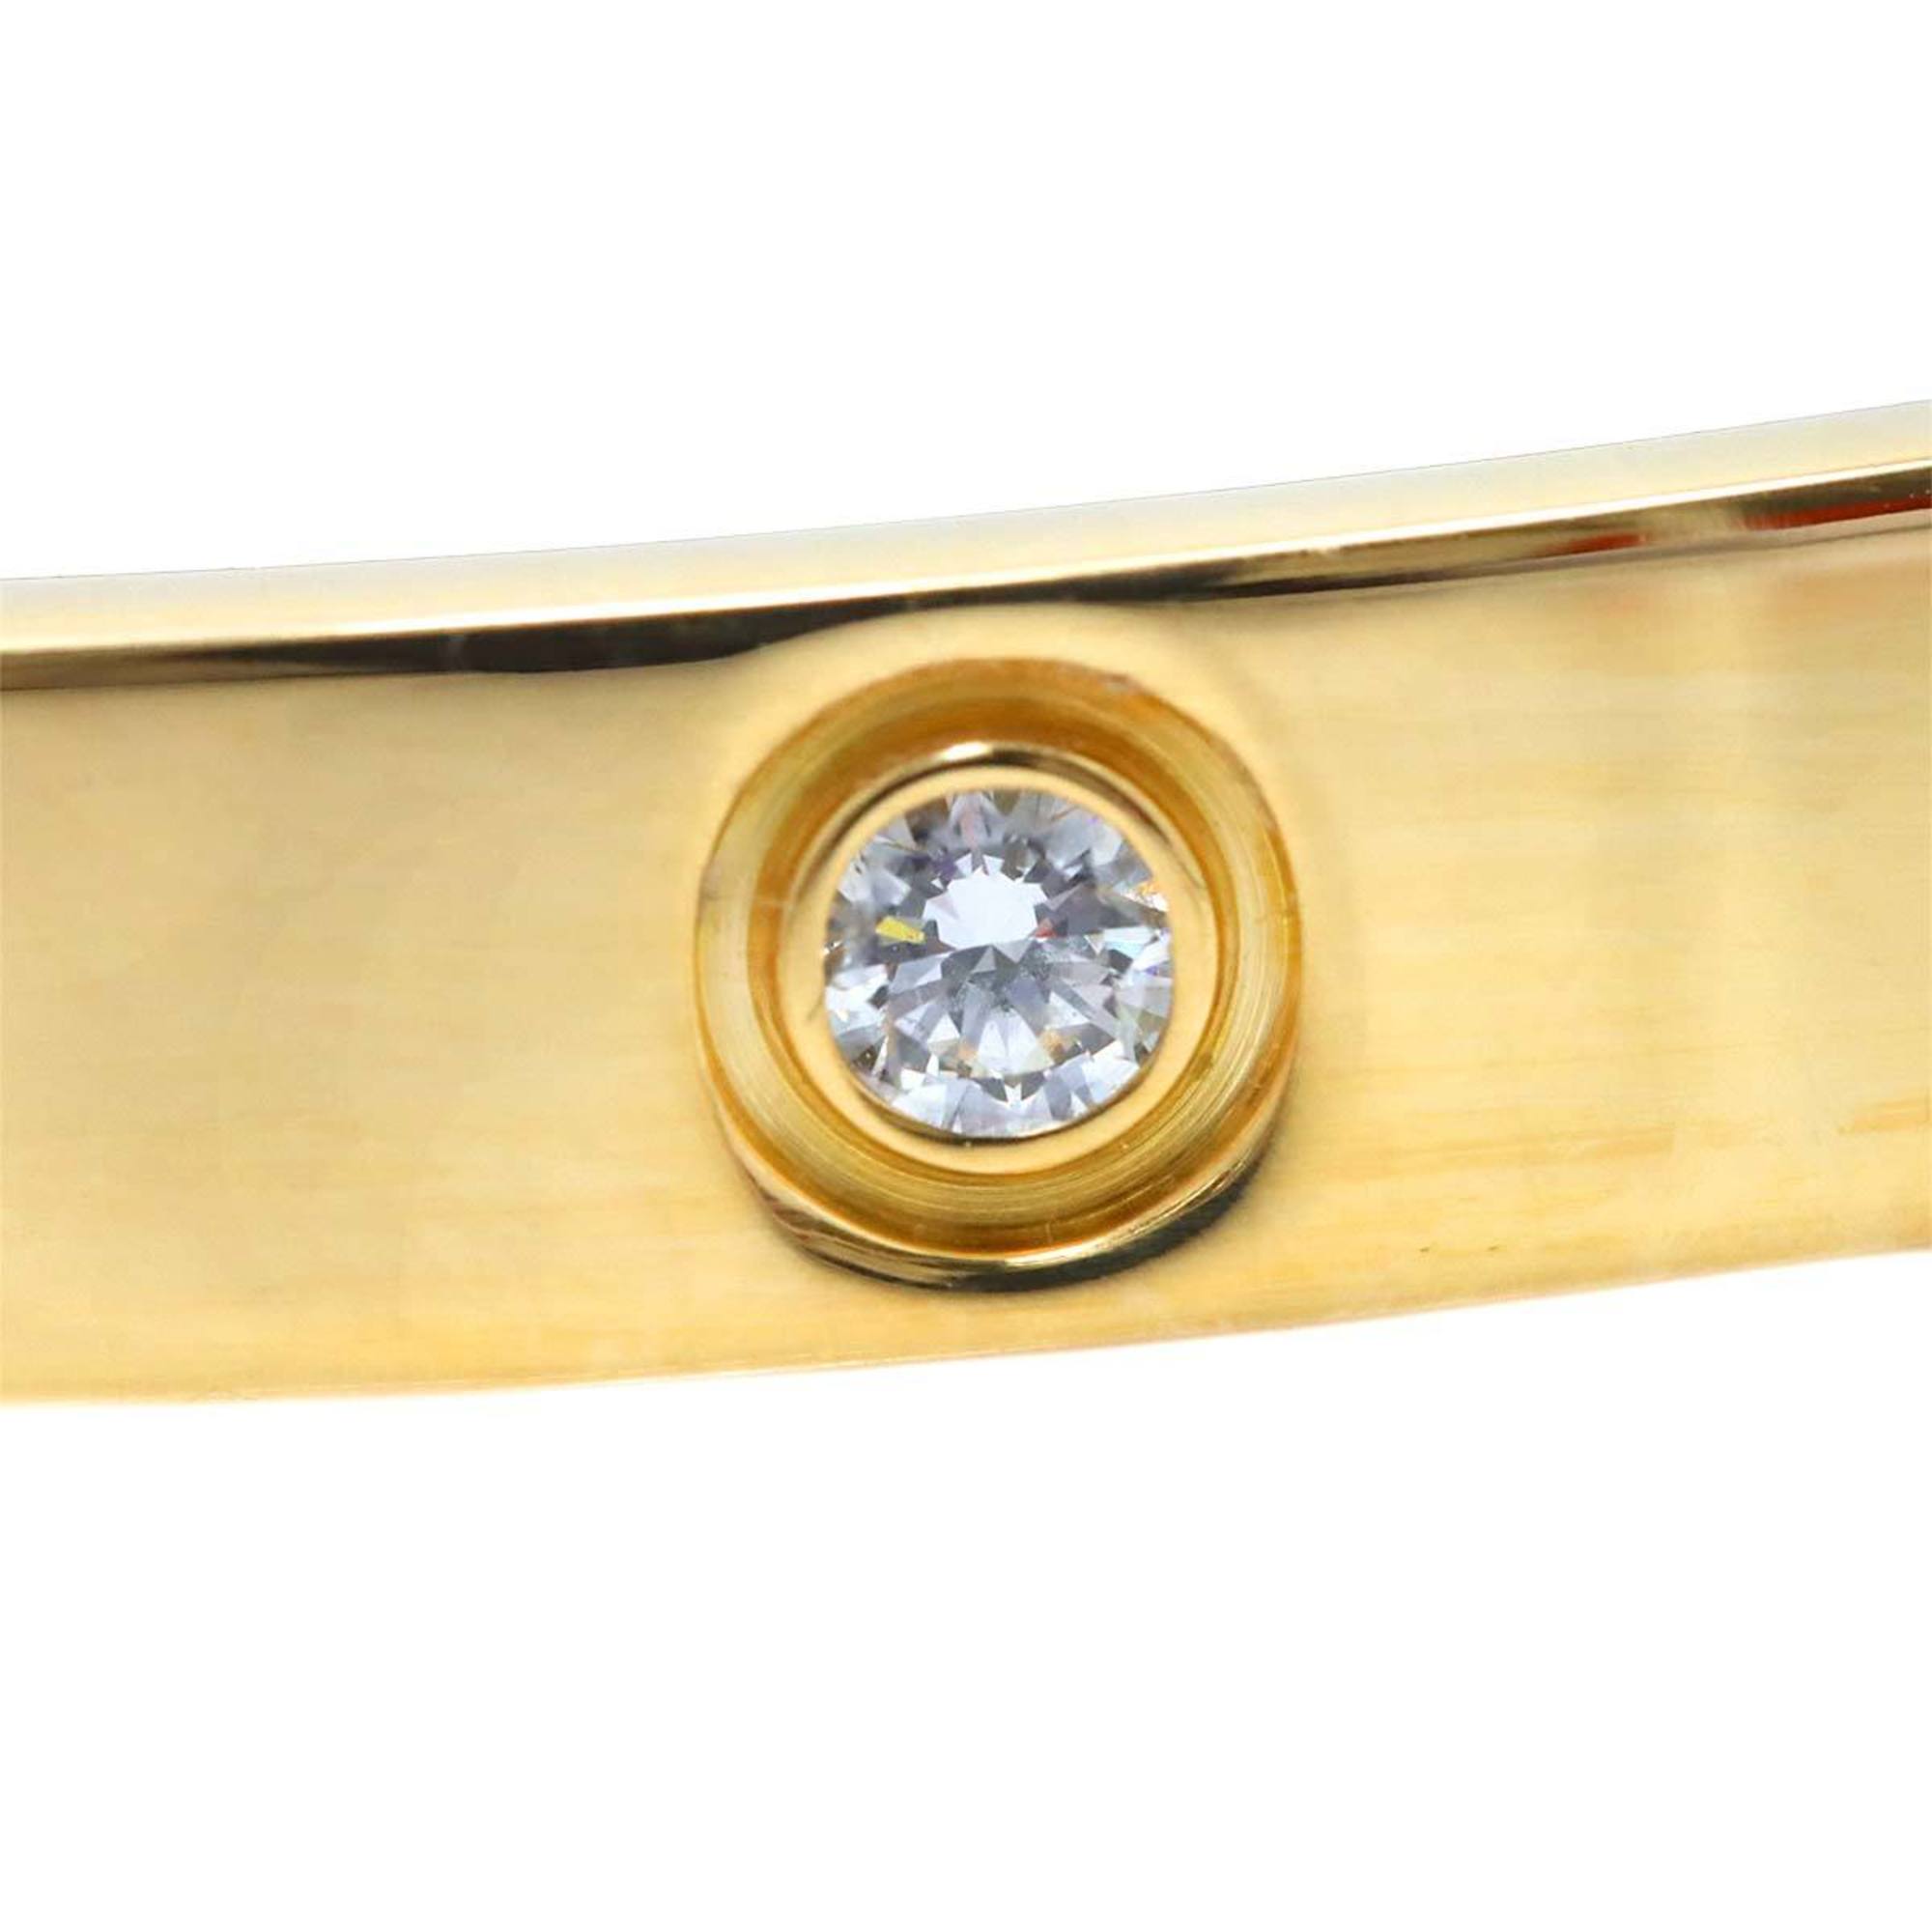 Cartier Love Bracelet Full Diamond 10P #16 K18 YG Yellow Gold 750 Bangle